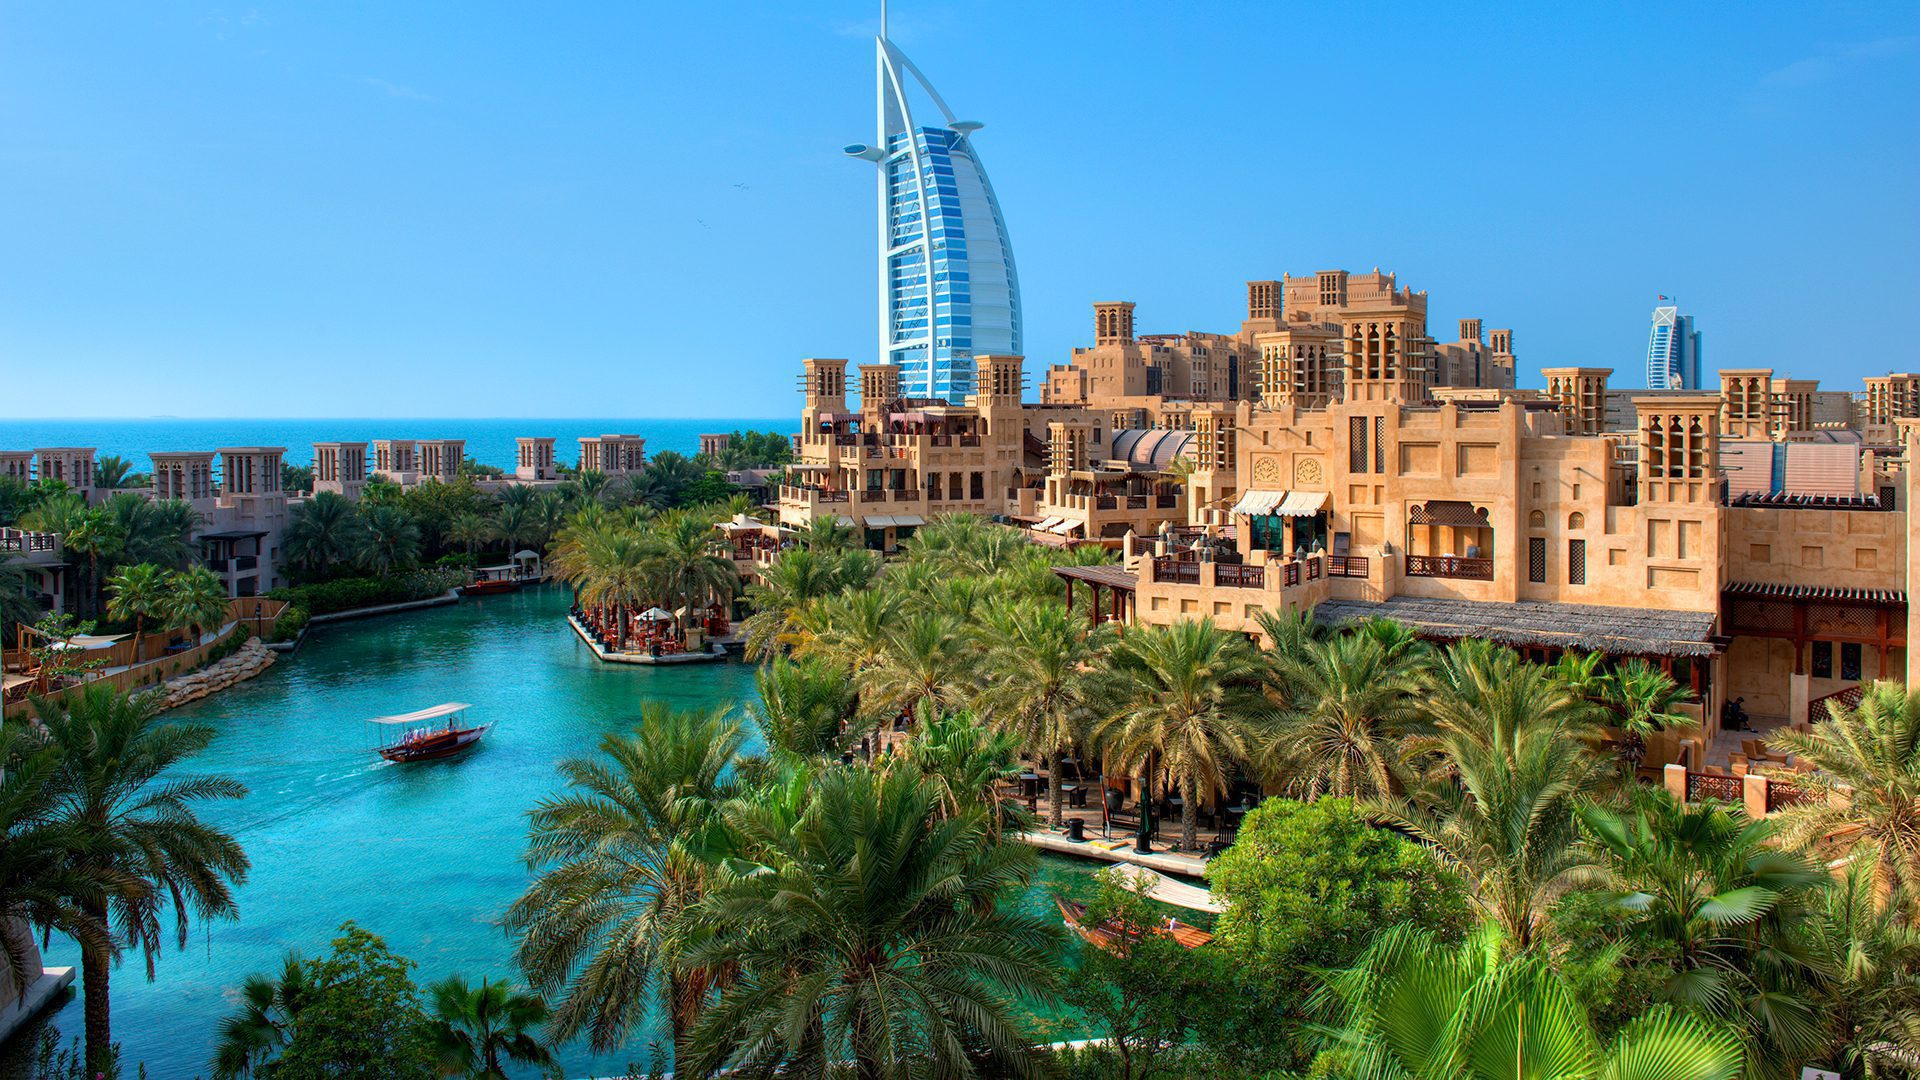 DTCM Madinat Jumeirah, Image by Dubai Tourism